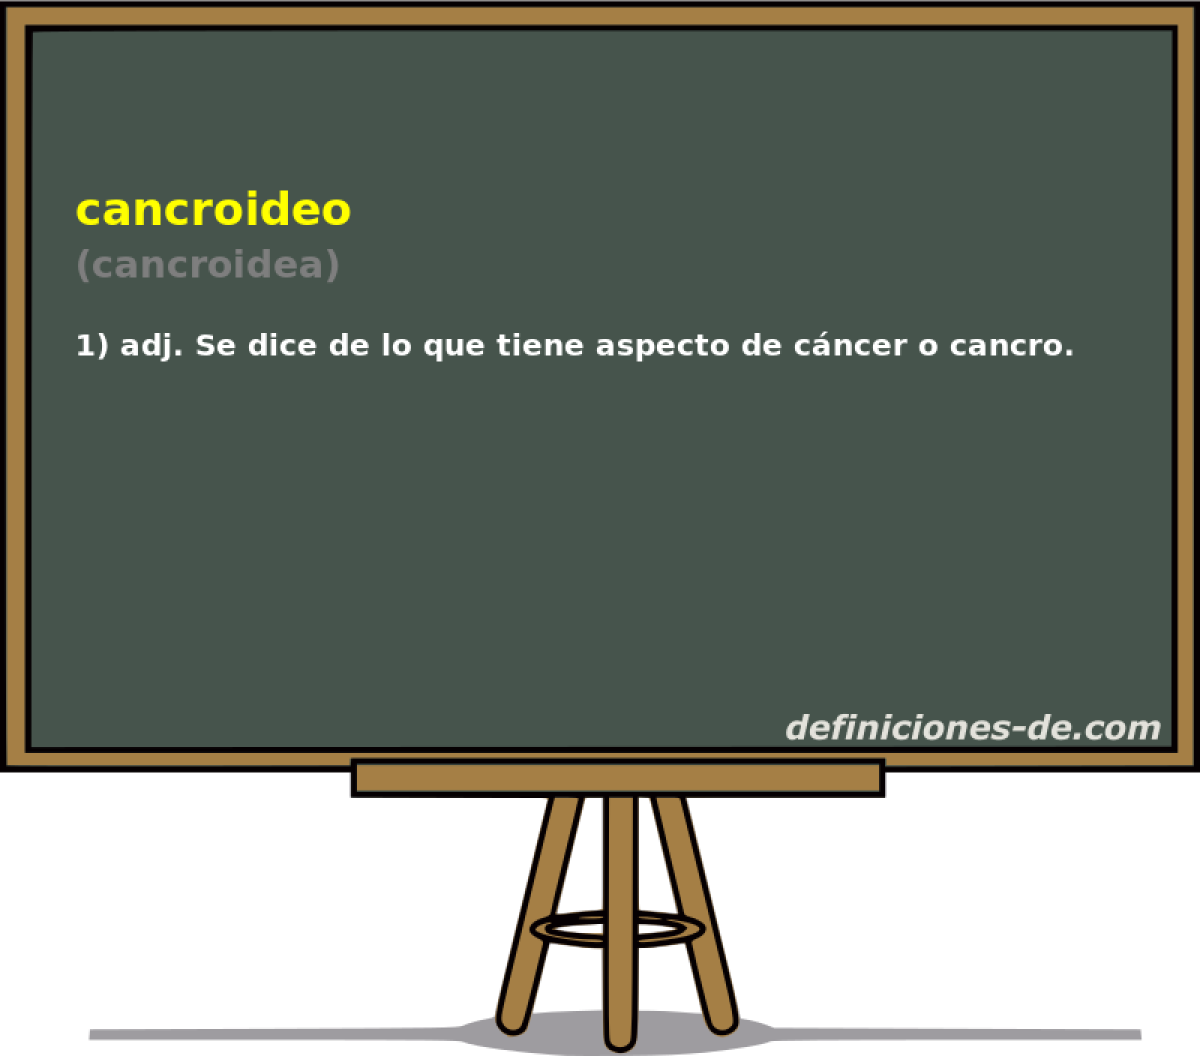 cancroideo (cancroidea)